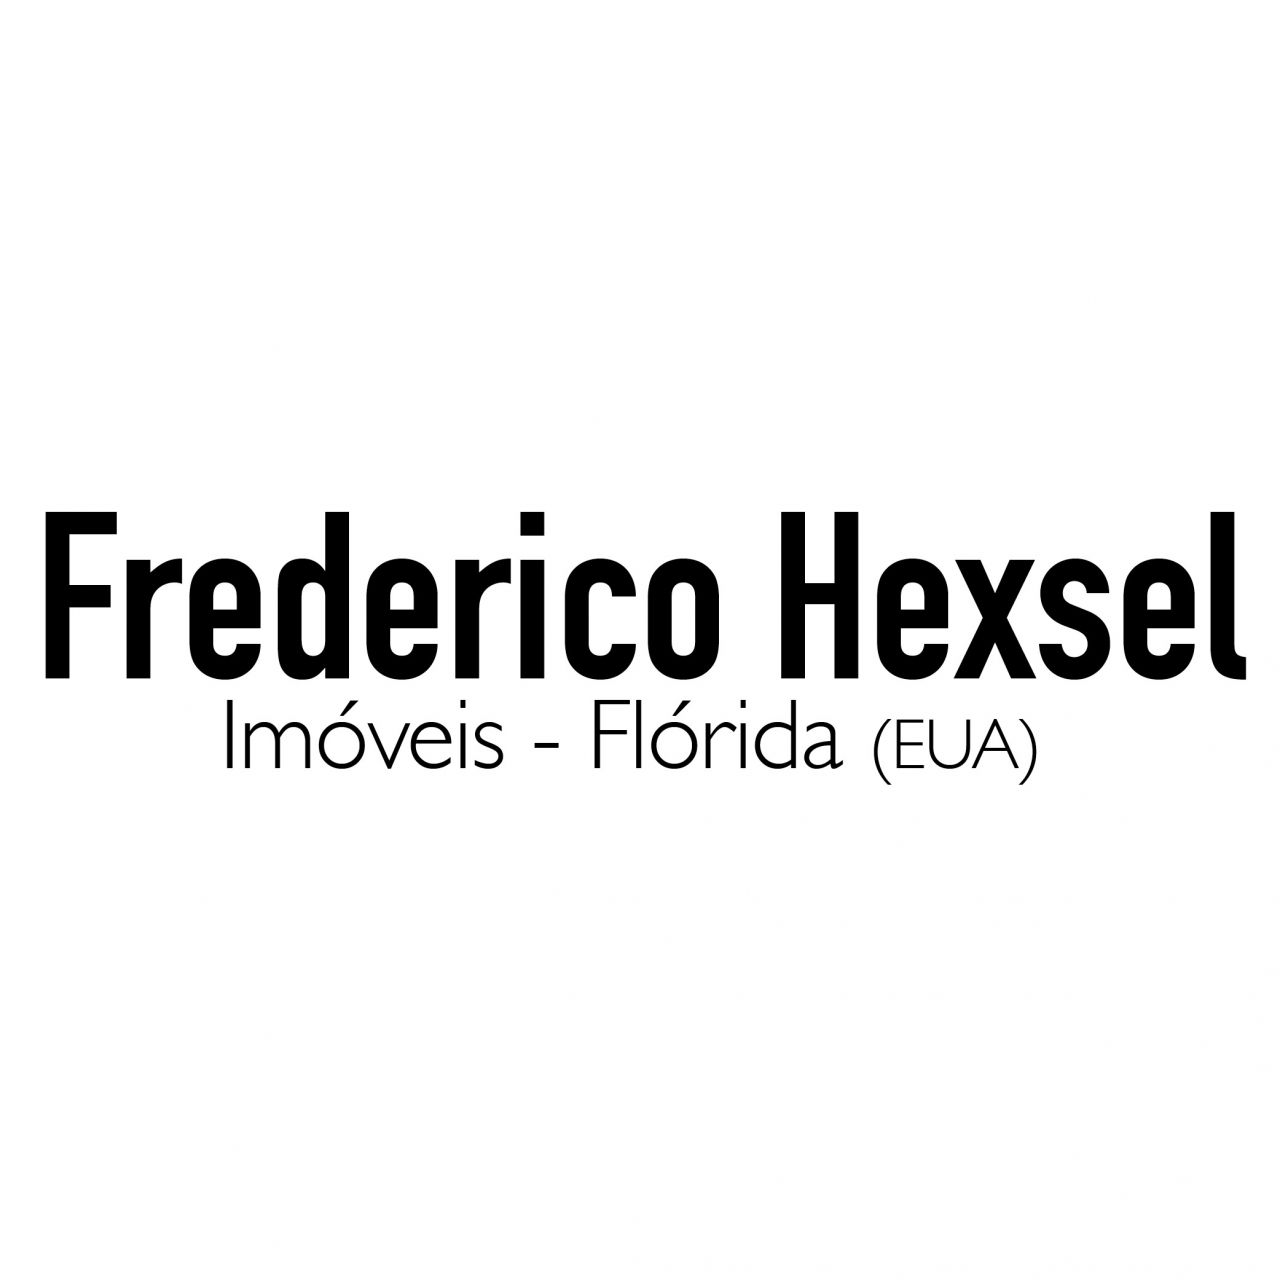 Frederico Hexsel